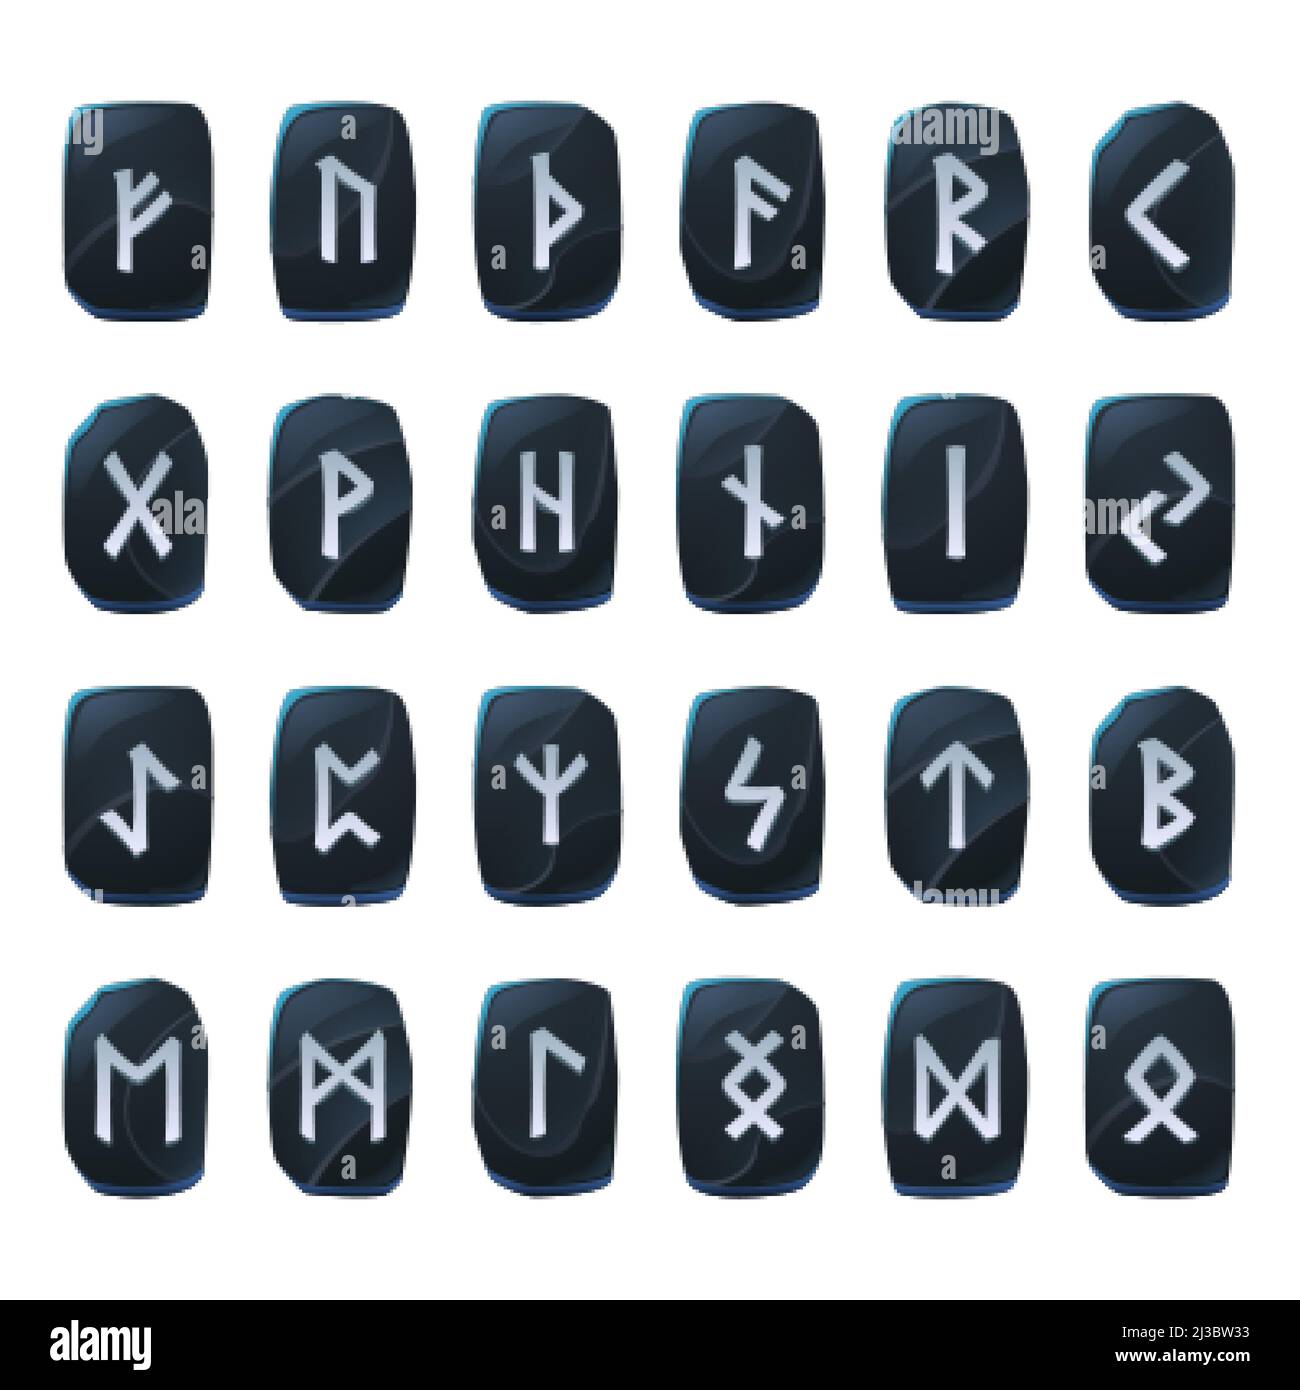 Ensemble de runes de jeu d'onyx, alphabet antique nordique, symboles du futuriste celtique viking gravés sur des pièces en pierre noire. Signes occulte ésotériques, interface utilisateur mystique ou gui Illustration de Vecteur